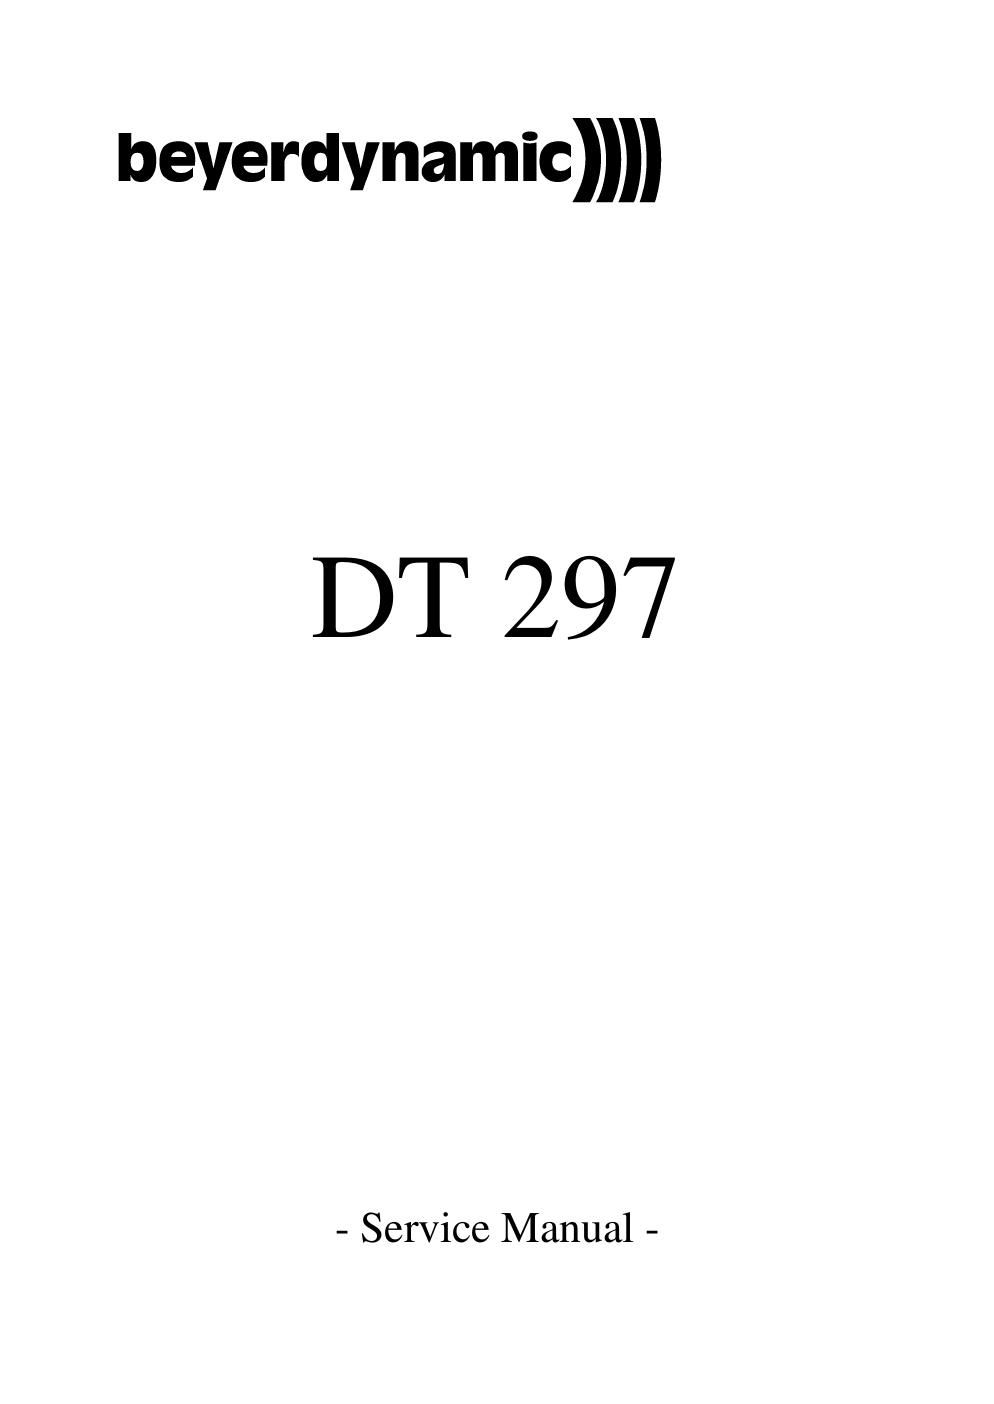 beyerdynamic dt 297 service manual